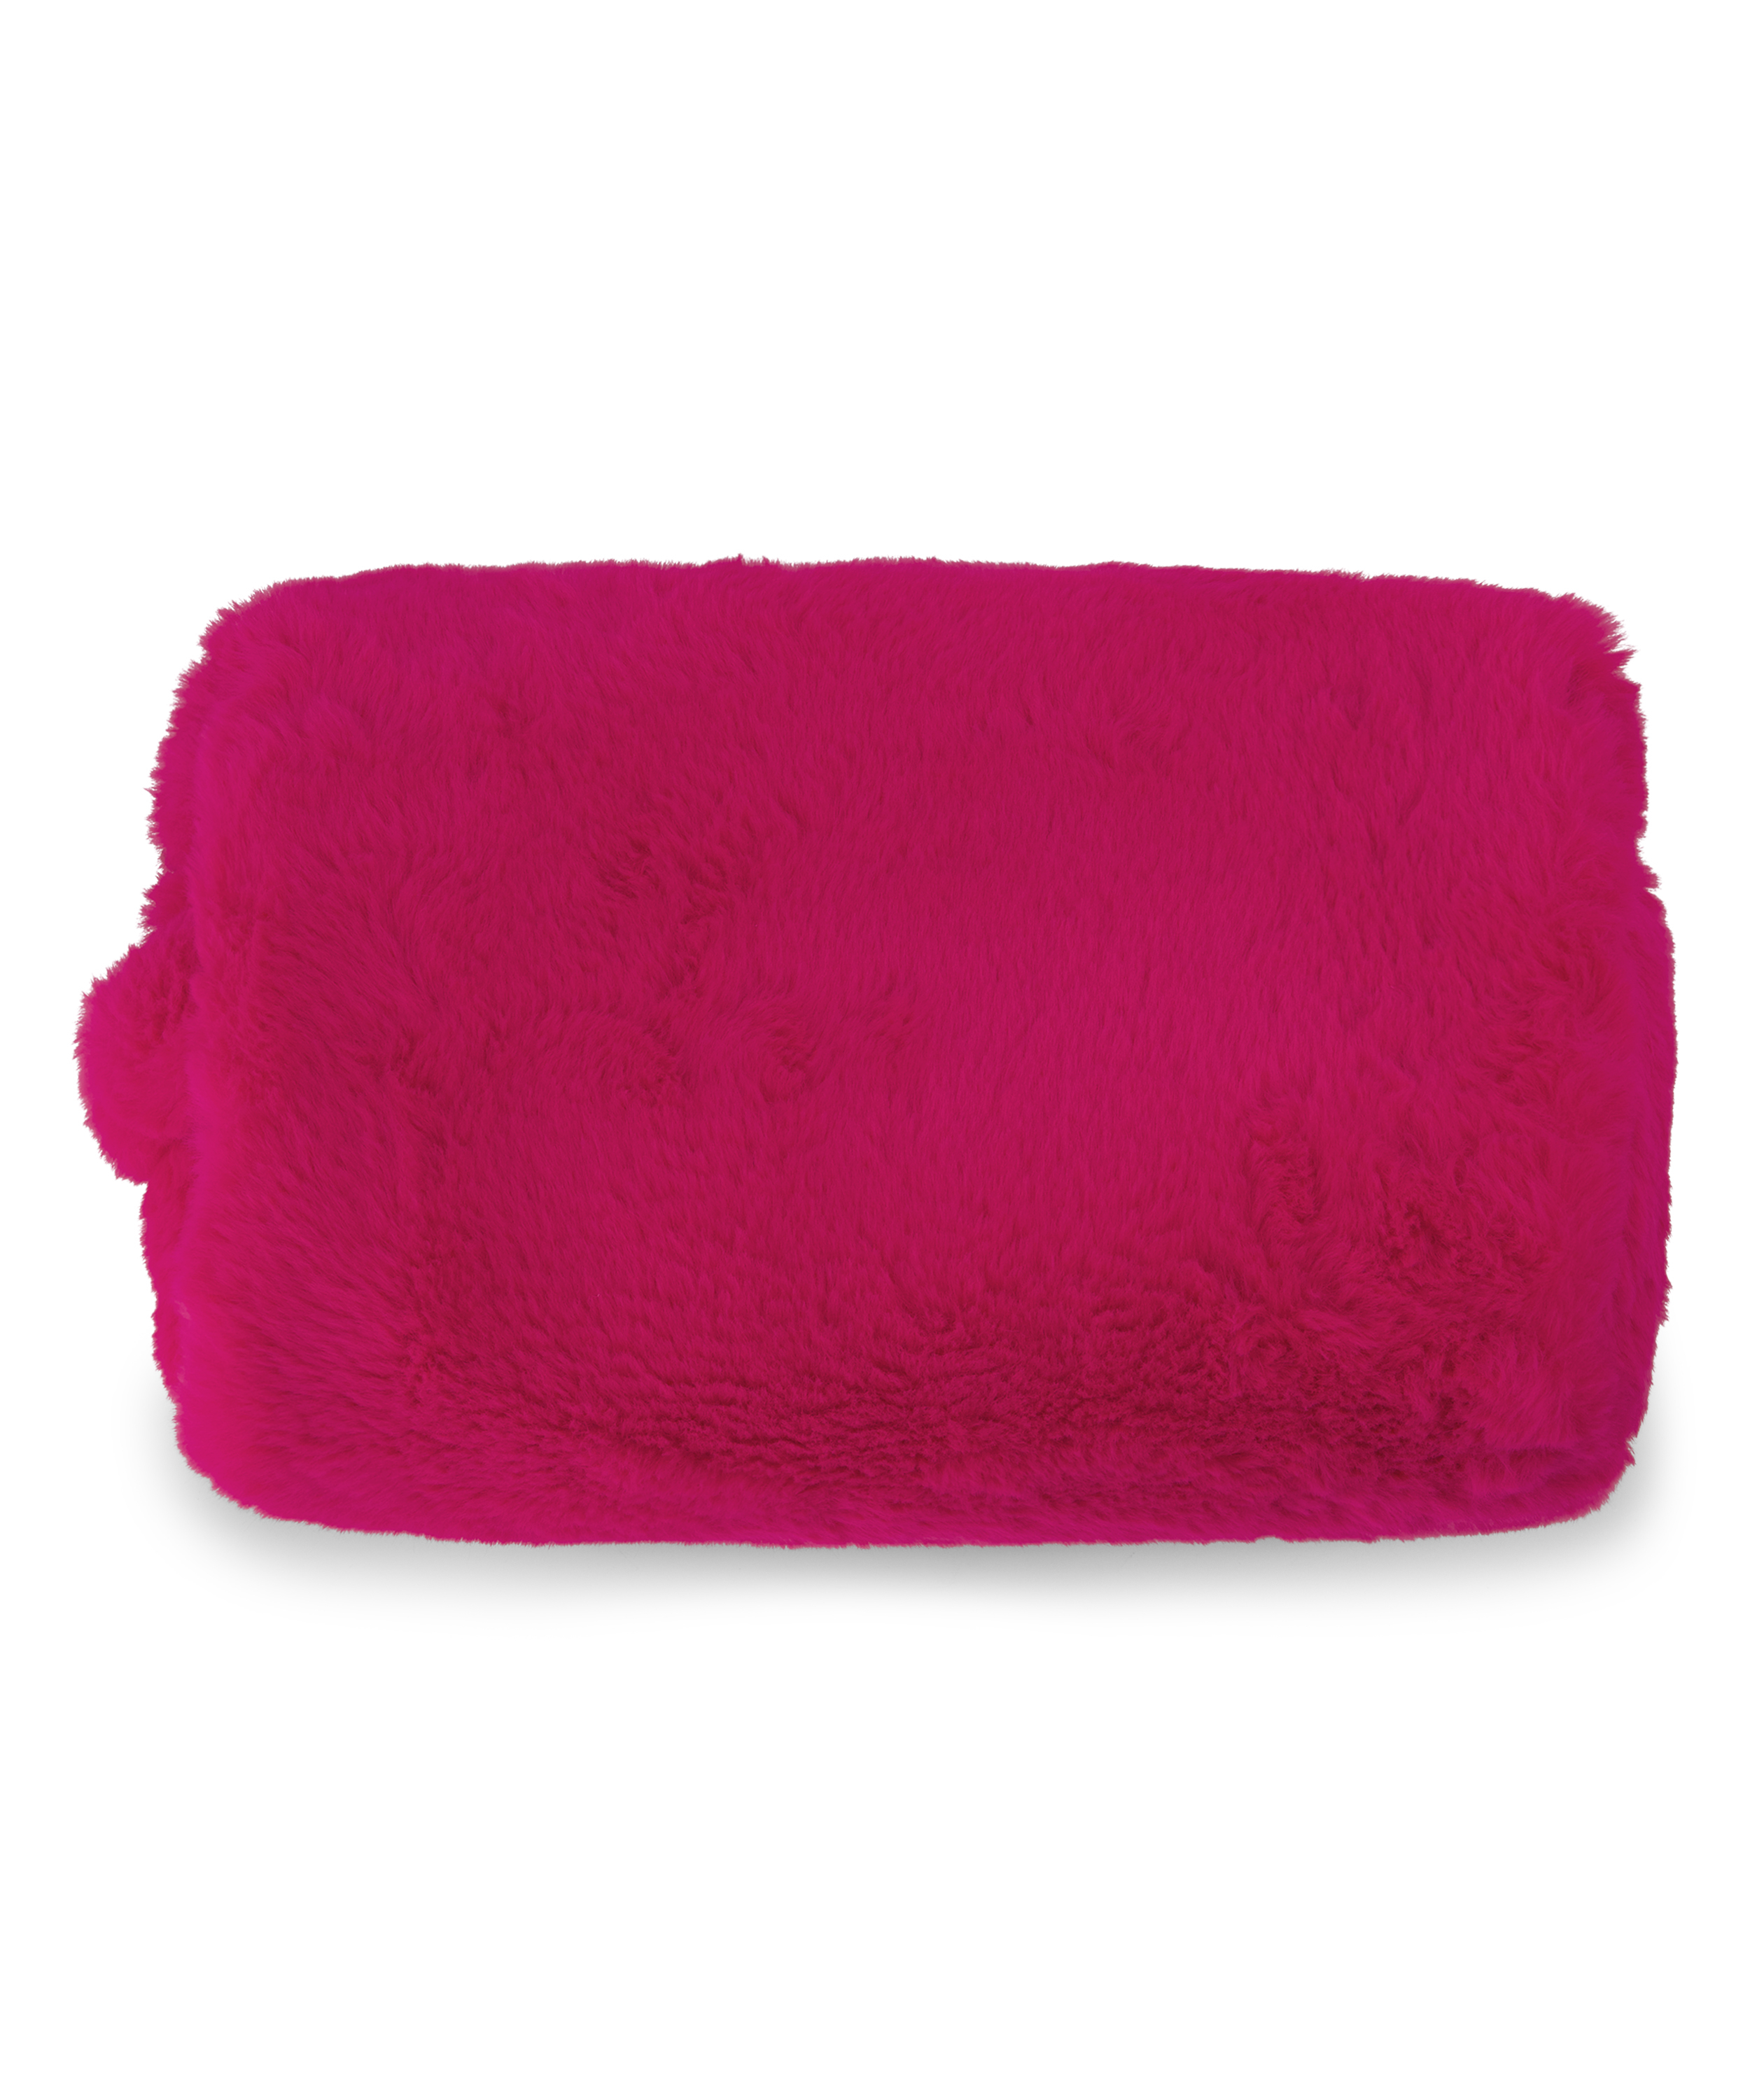 Make-up bag Fake fur, Pink, main